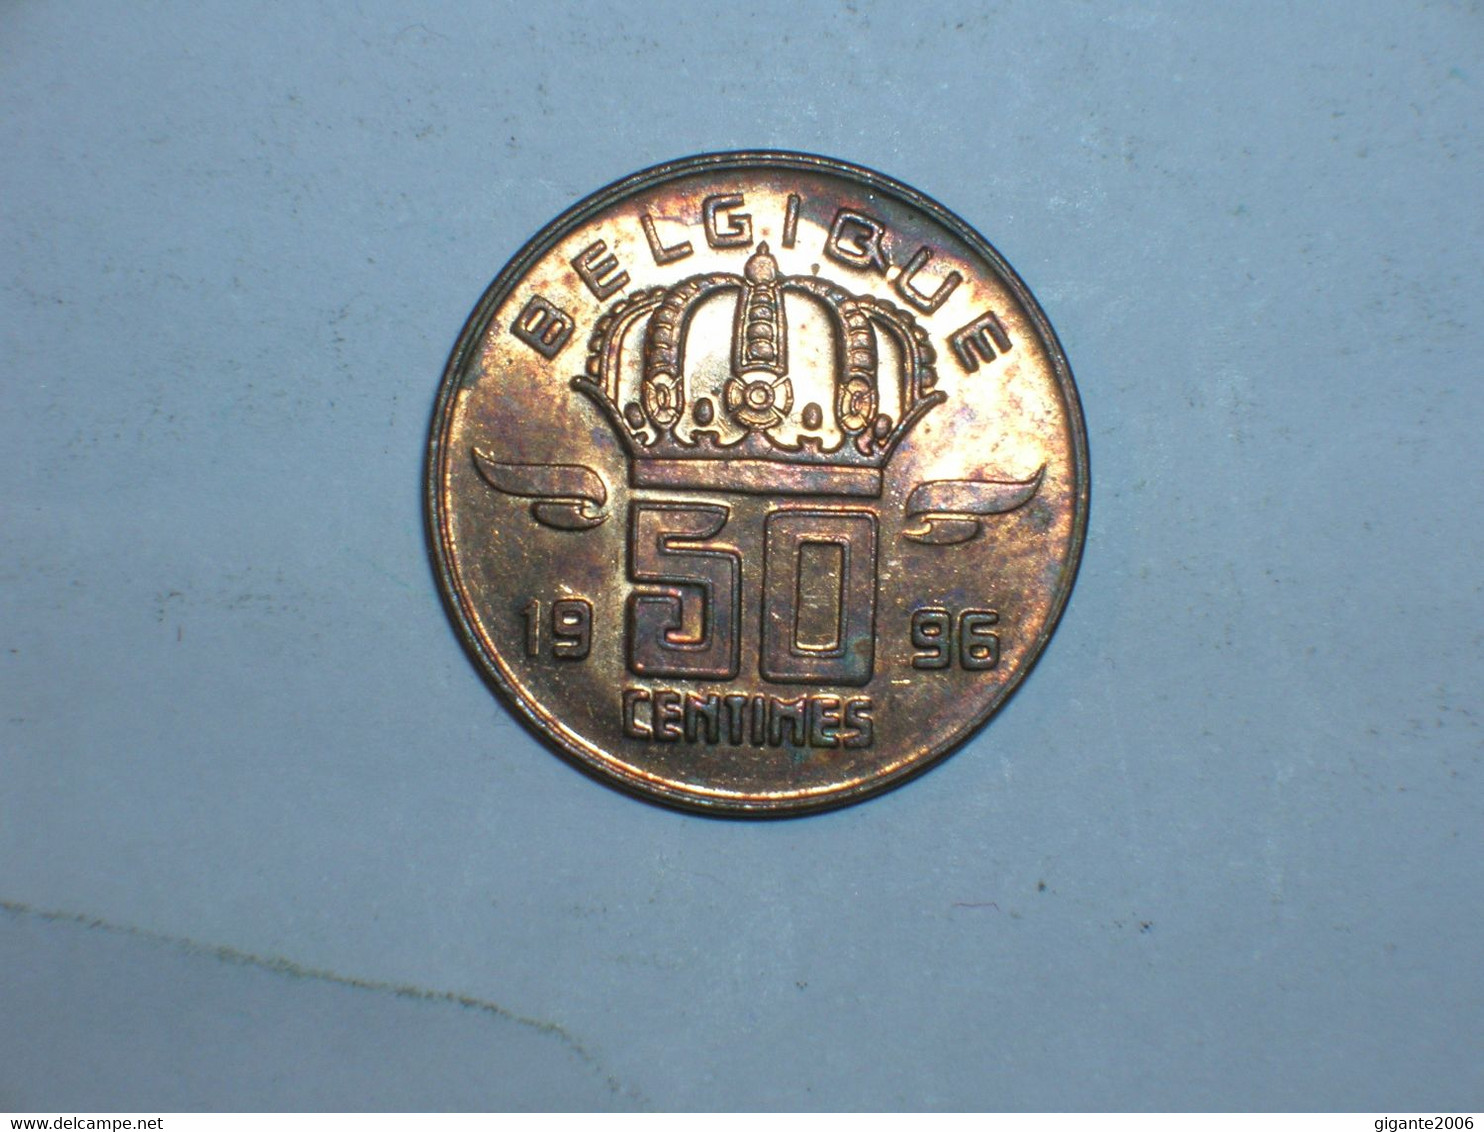 BELGICA 50 CENTIMOS 1996 FR (9578) - 50 Cent